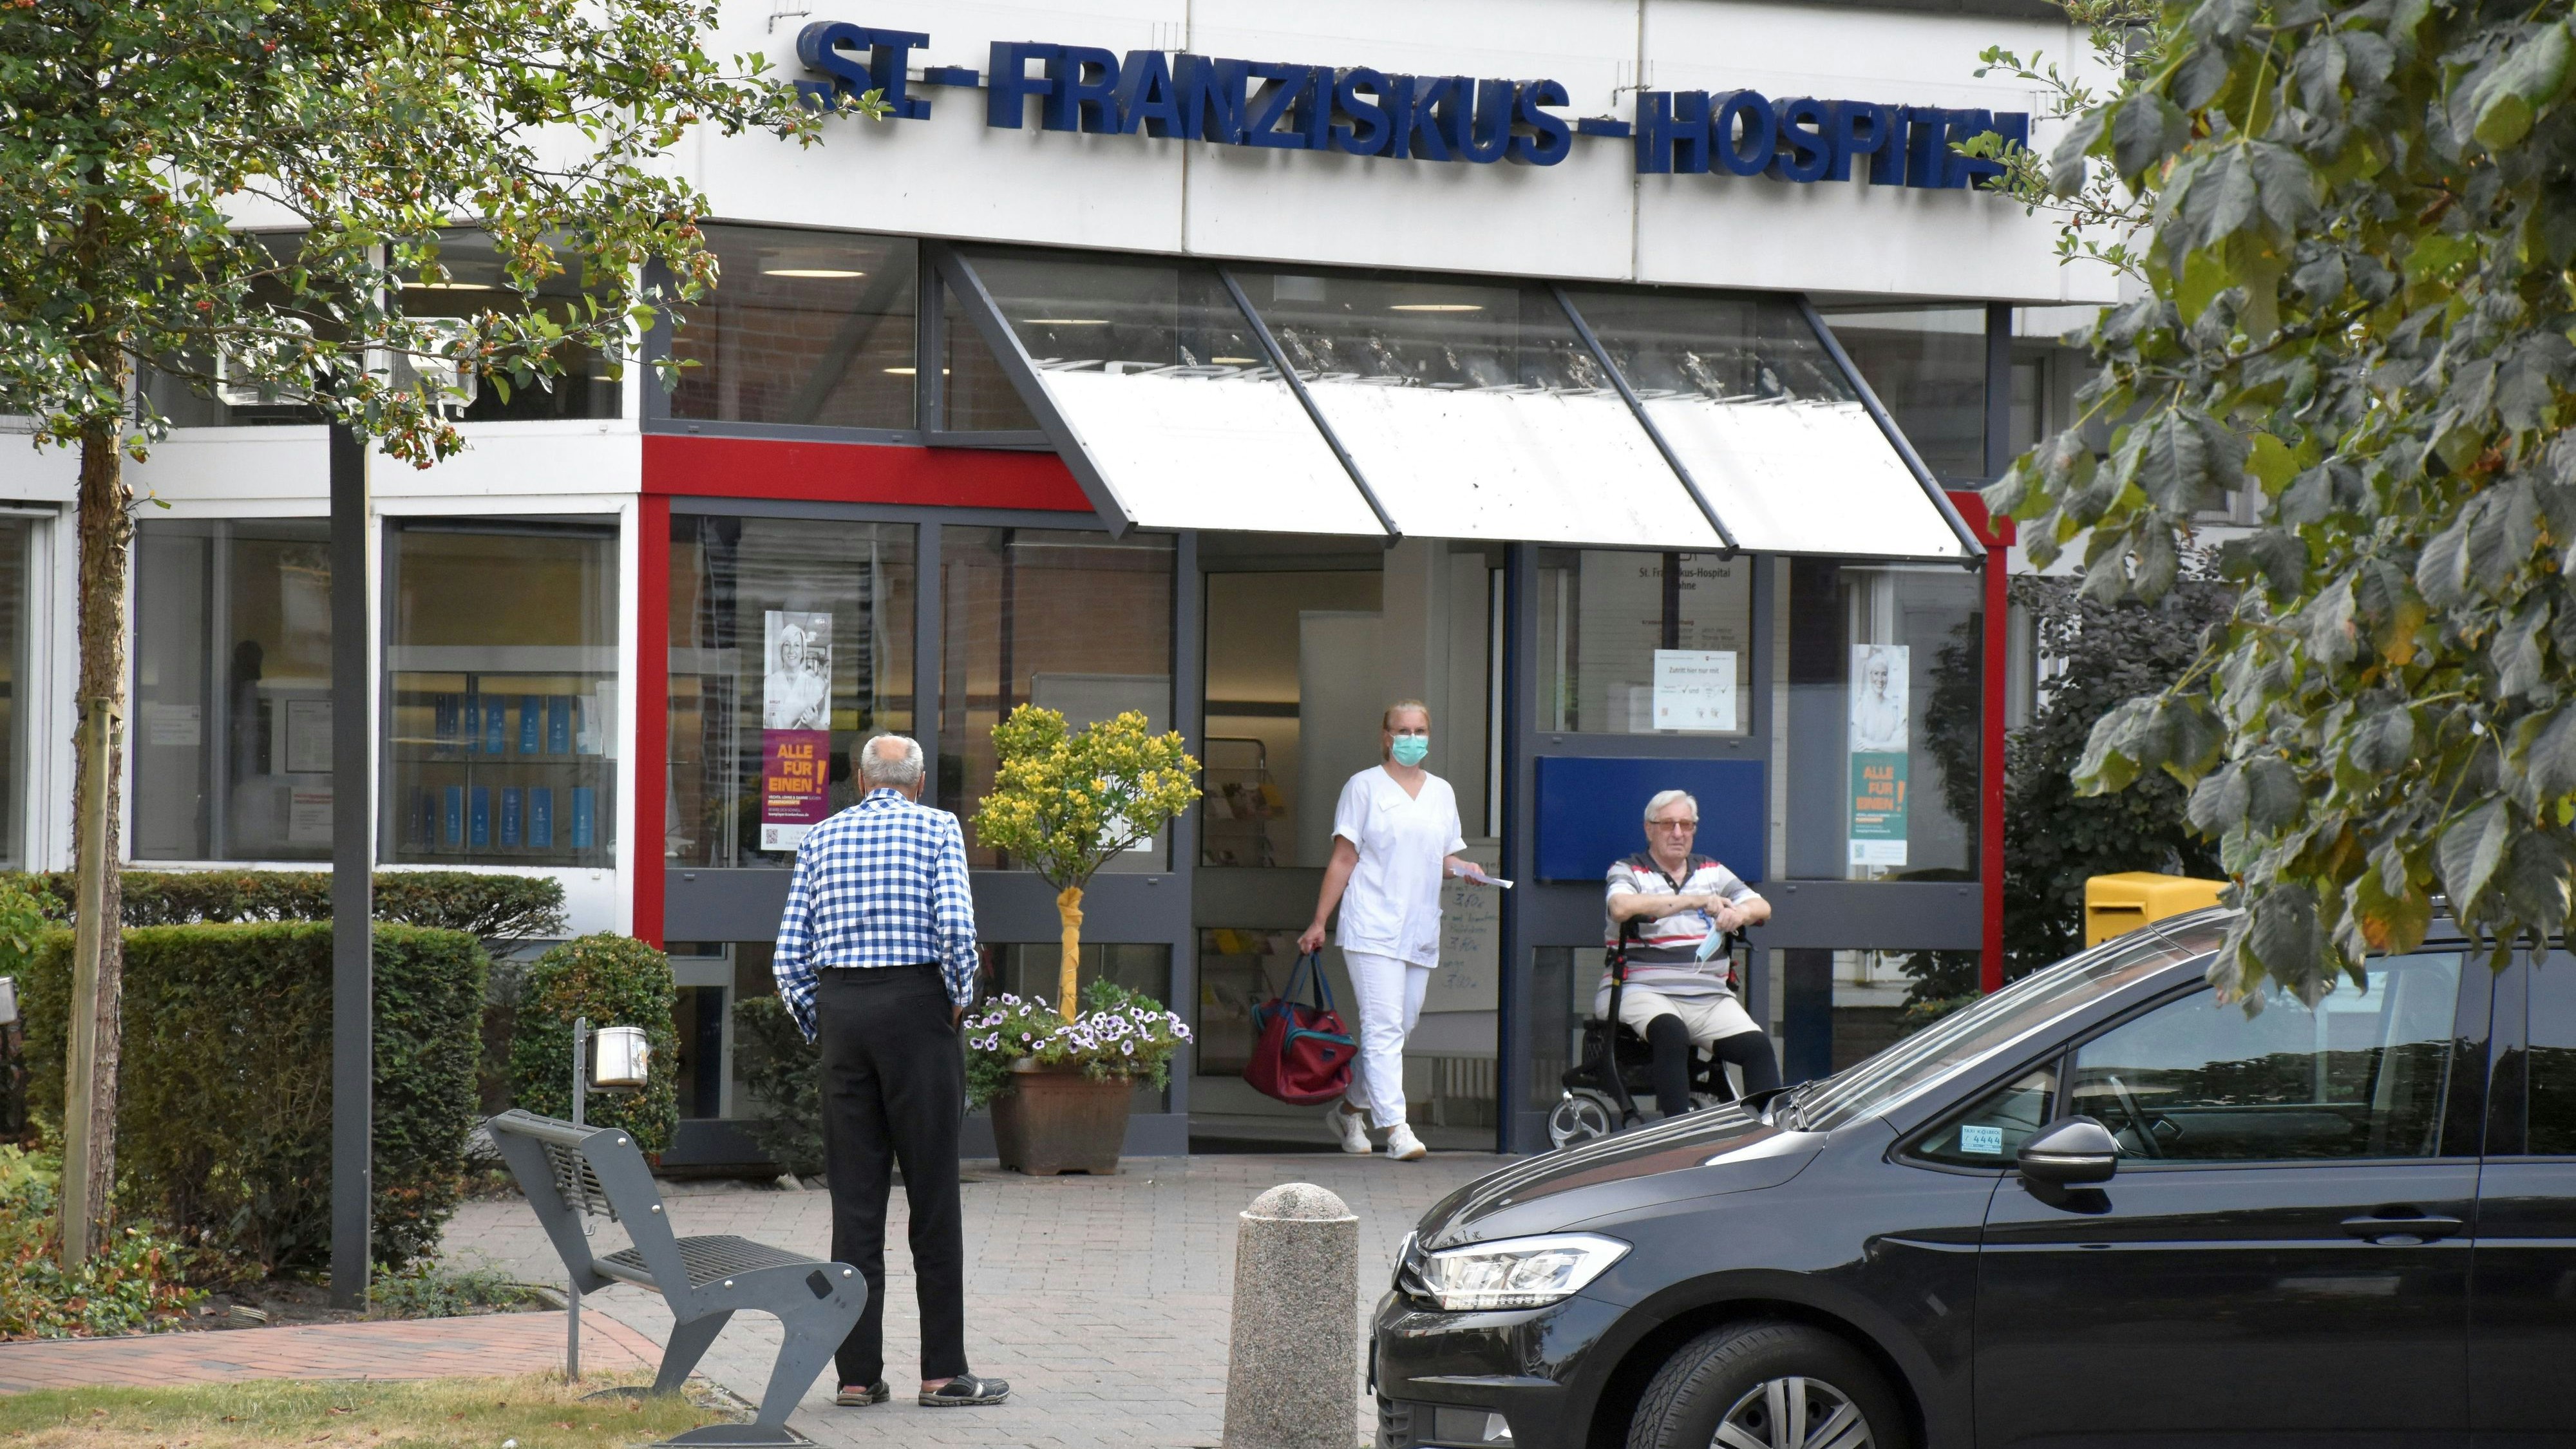 Nach den Chefärzten und der Pflegedirektion befürwortet auch die Mitarbeitervertretung am St. Franziskus-Hospital in Lohne die Pläne zum Umbau der Krankenhausstrukturen. Foto: Berg